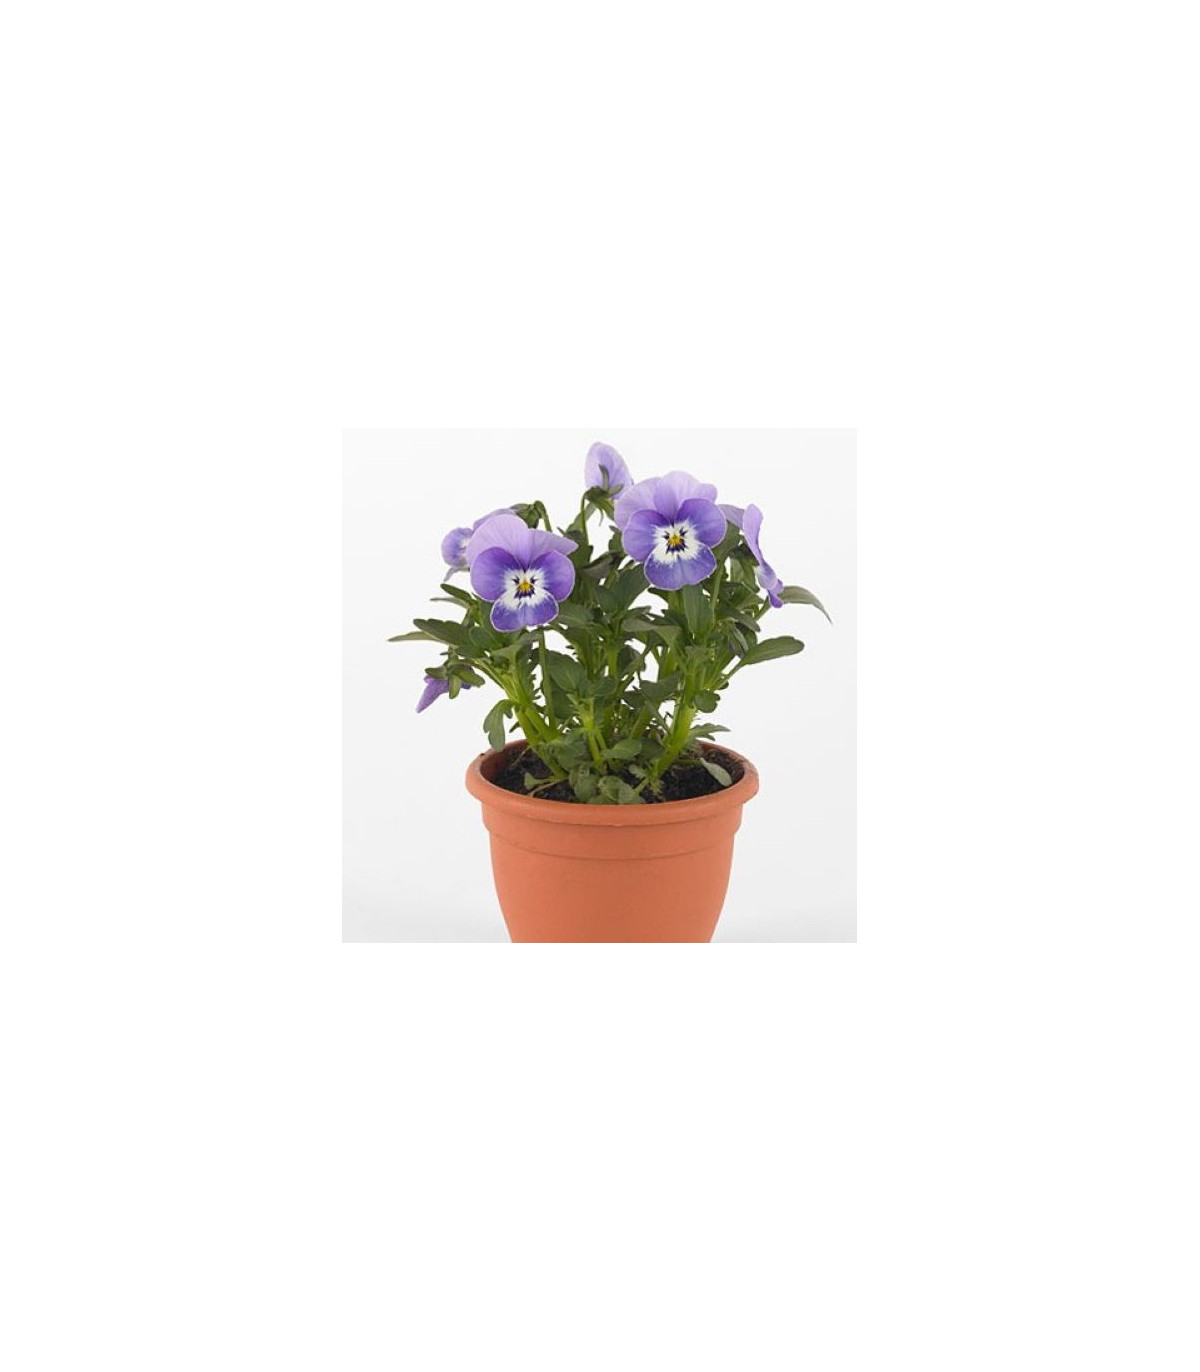 Fialka Twix F1 Marina - Viola cornuta - semená fialky - 20 ks